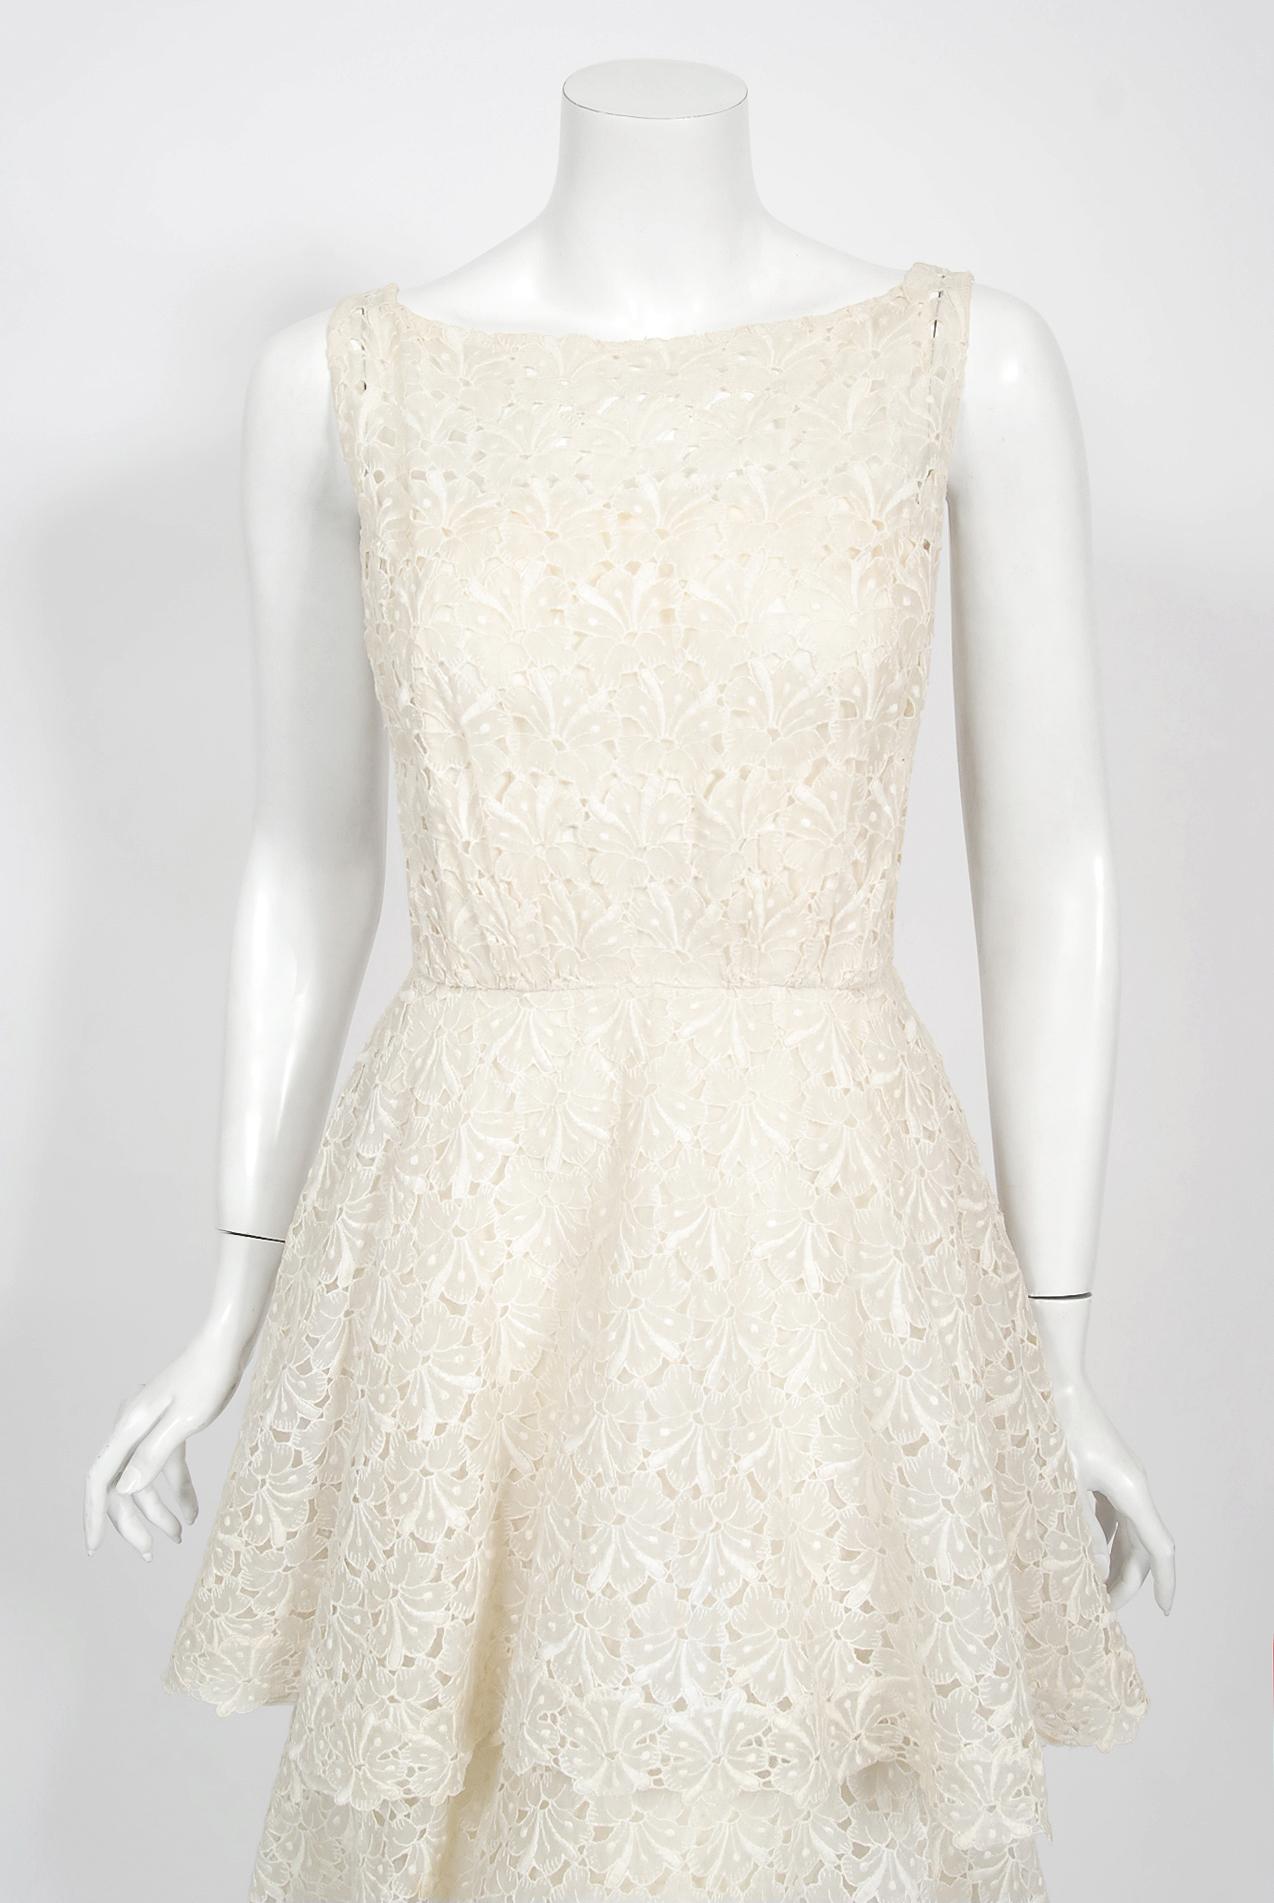 Eine absolut atemberaubende Ceil Chapman Designer Elfenbein bestickte Baumwolle Öse Kleid aus den späten 1950er Jahren. Perfekt für jedes bevorstehende Sommerereignis; in dieser Schönheit kann man sich einfach nur himmlisch fühlen! Ich liebe das